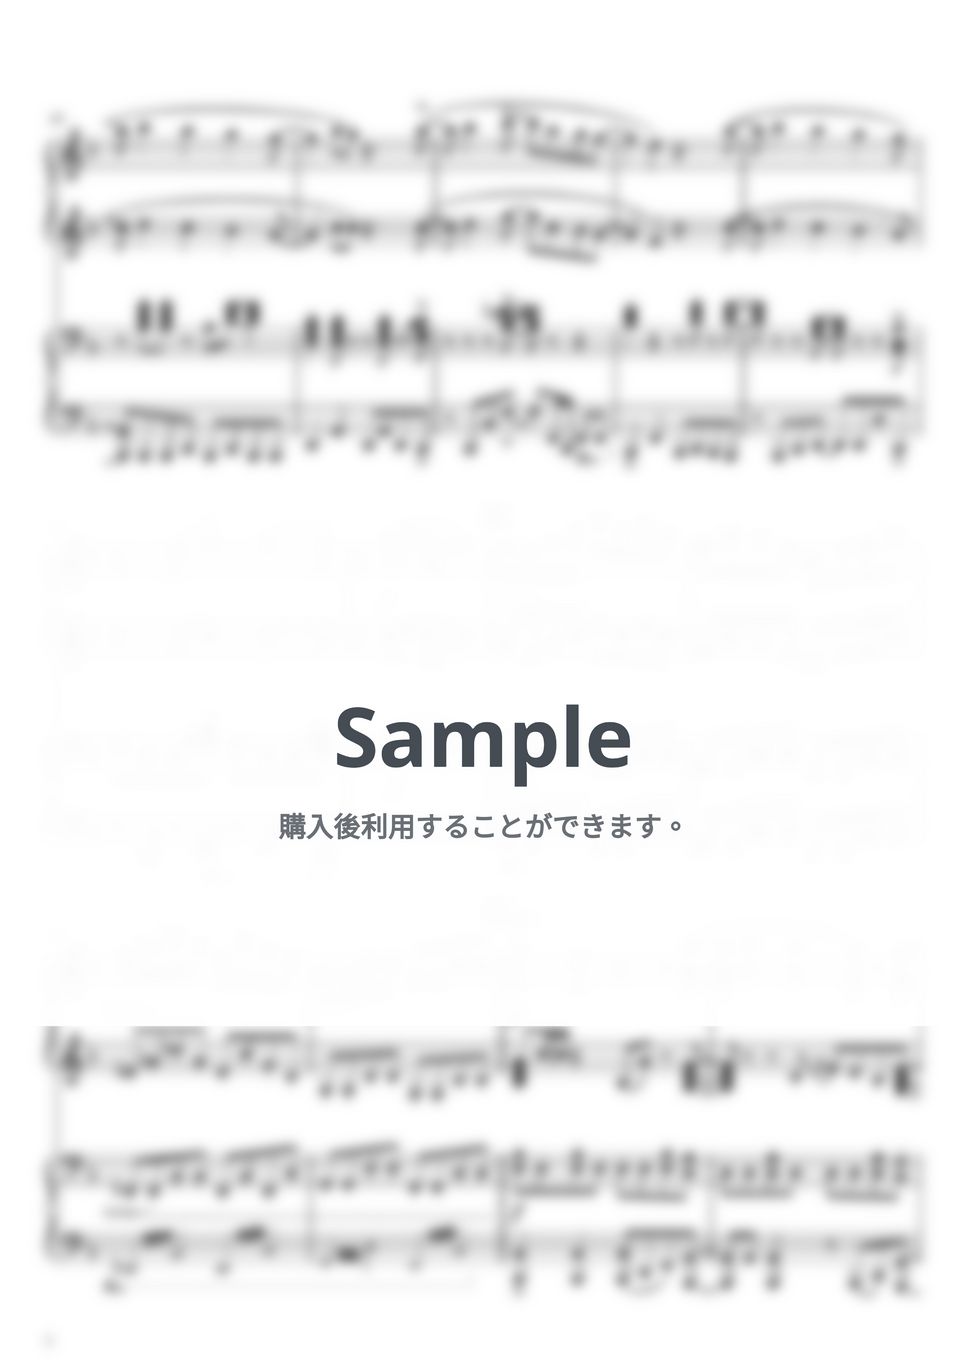 星野 源 - 創造 (ピアノ連弾上級 / 任天堂ＣＭ『スーパーマリオブラザーズ35周年』) by Suu